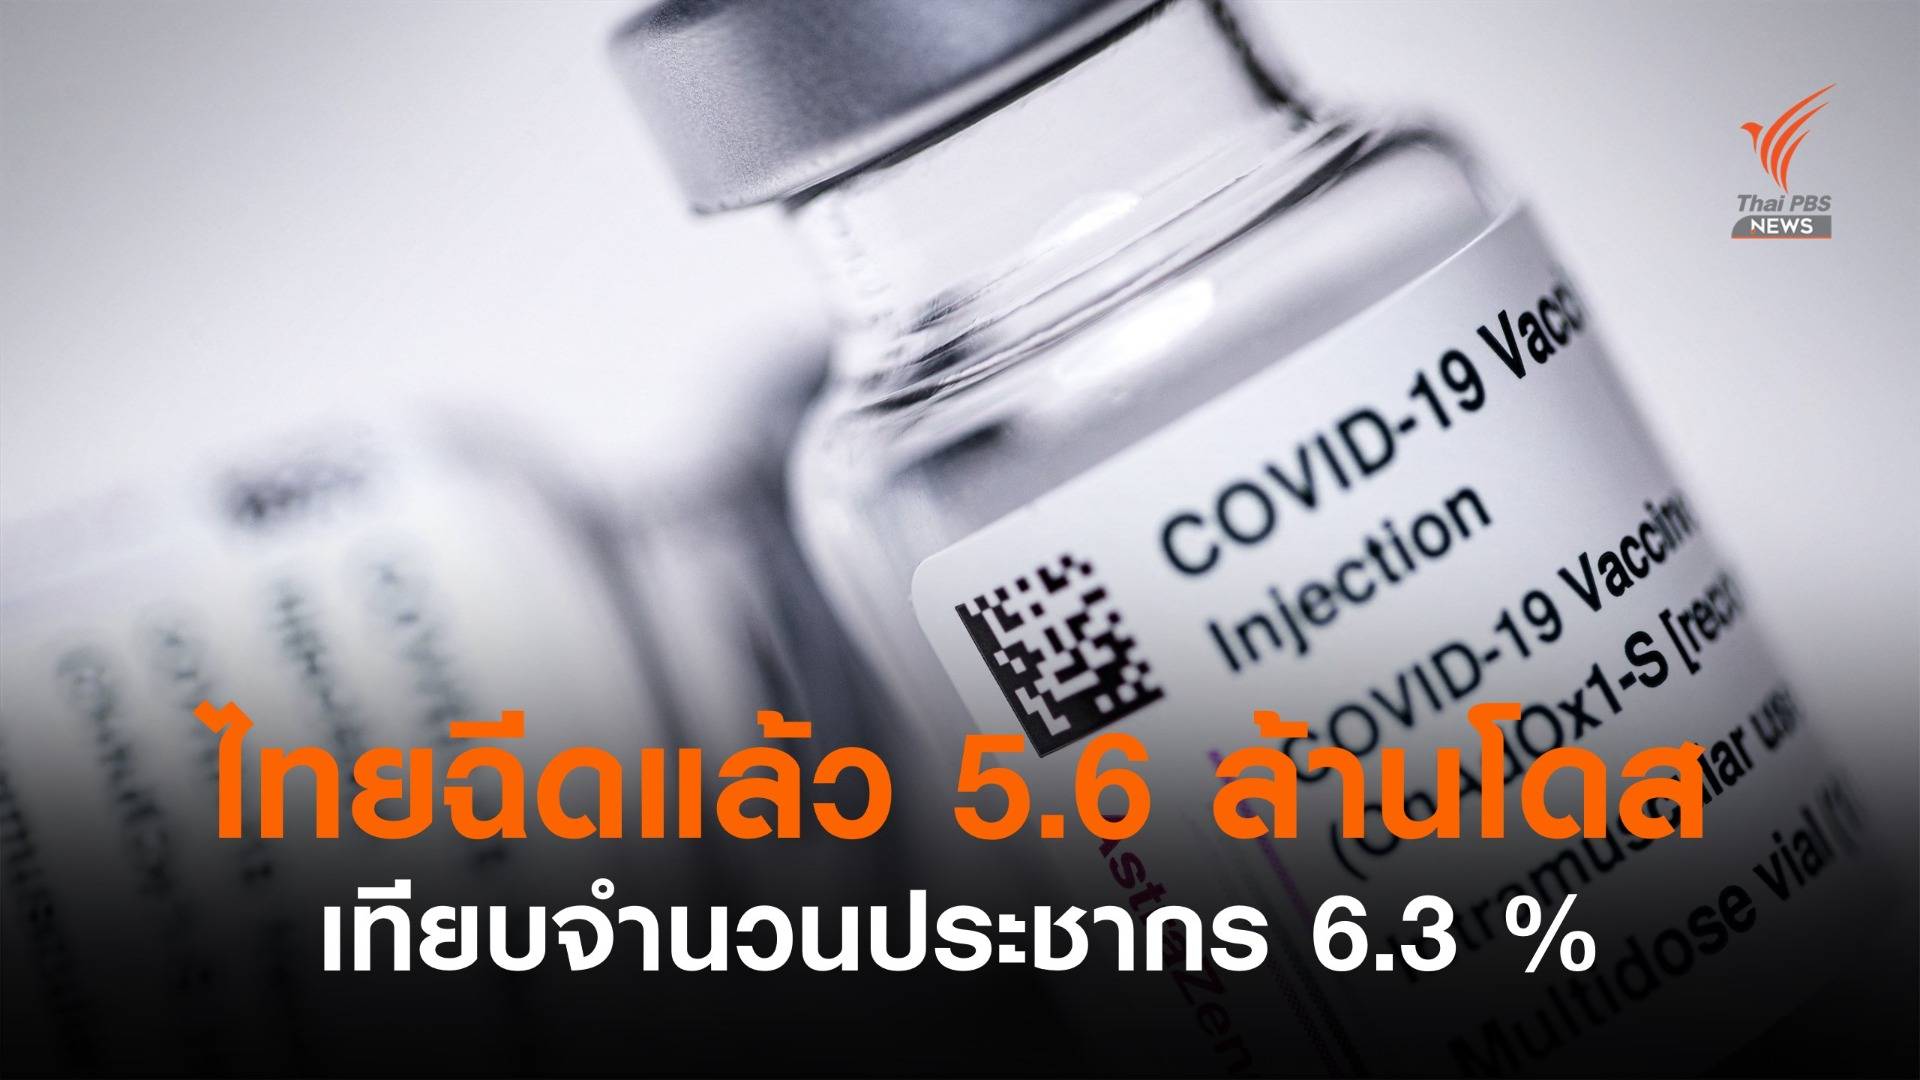 อว.เผยไทยฉีดวัคซีนรวม 5.6 ล้านโดส เทียบประชากร 6.3 %